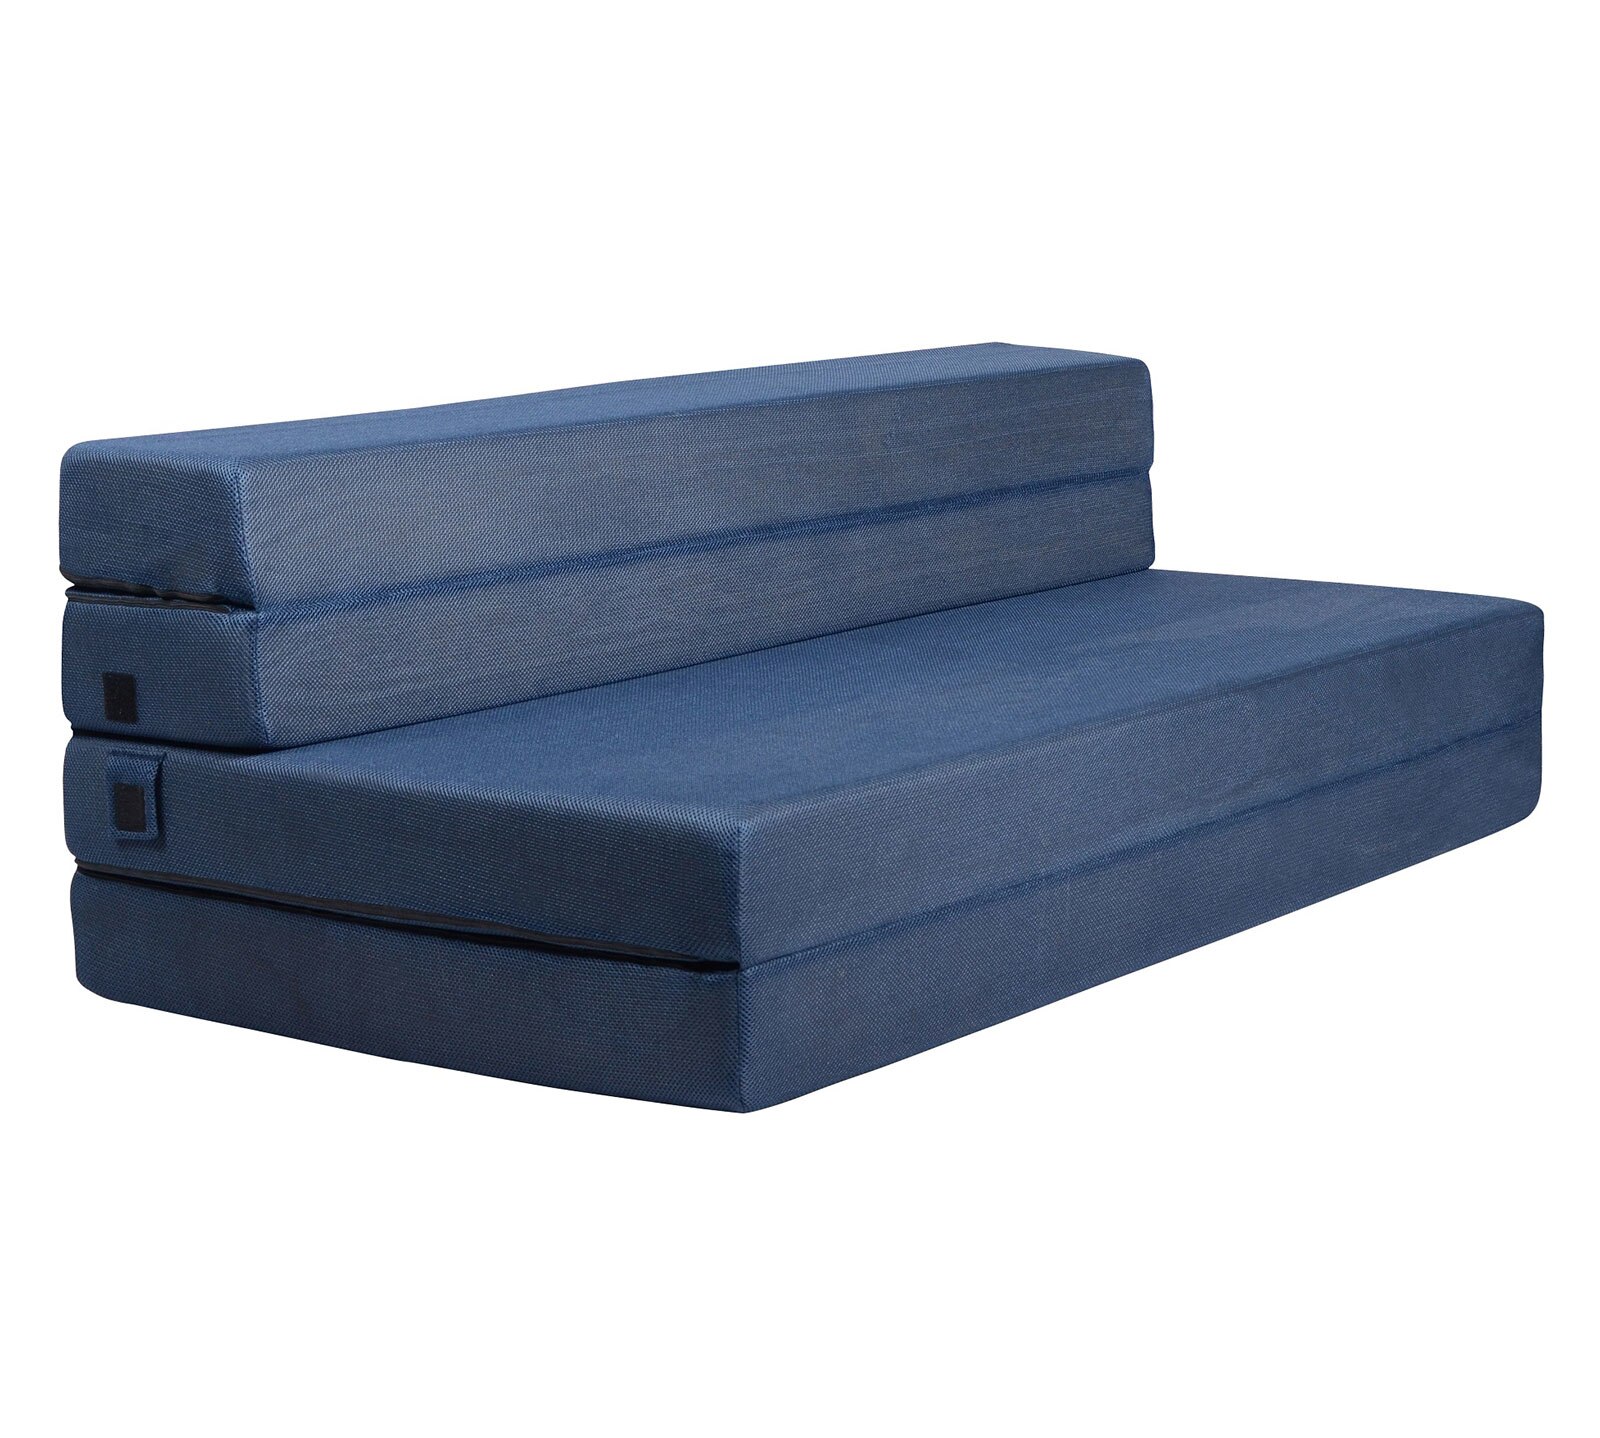 Tri-Fold Sofa Bed Mattress